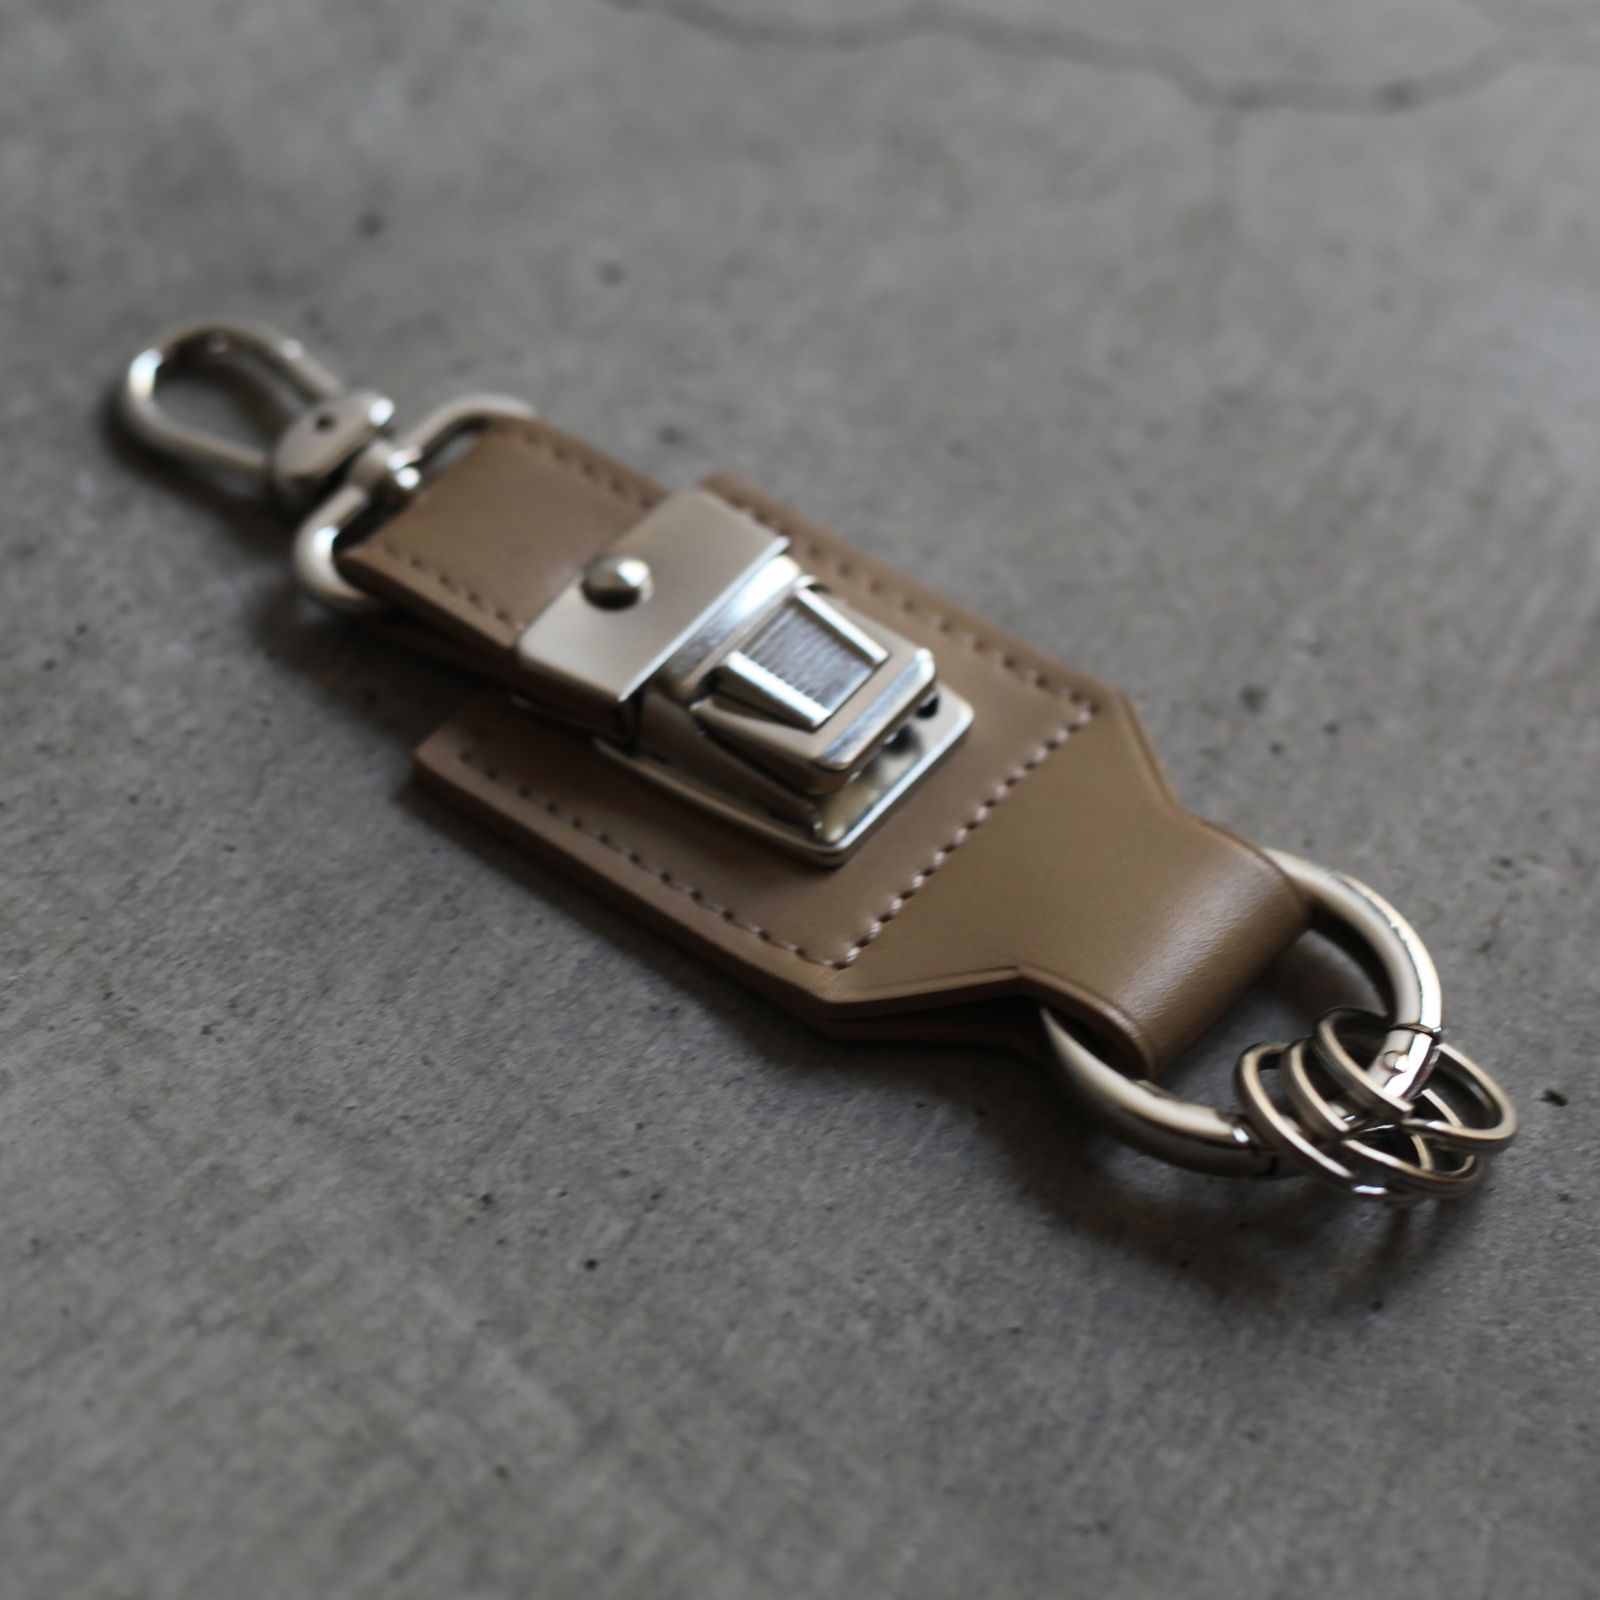 Double Ring Metallic Hook Locking Premium Key Ring or Key Chain